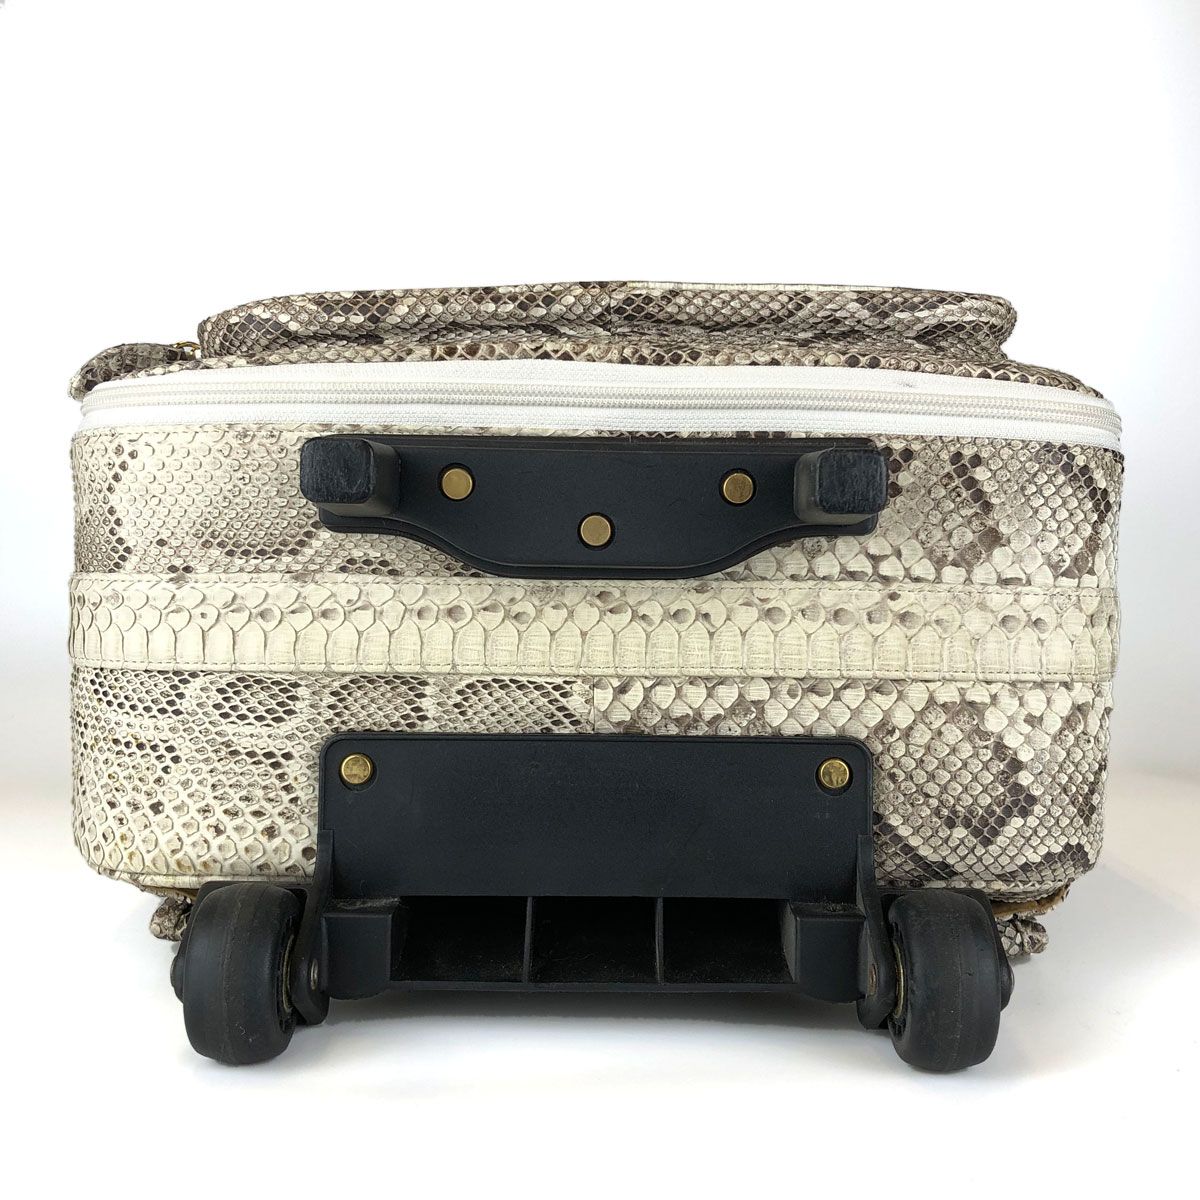 日本製 本革 パイソン スーツケース 約30L ホワイト系 リアルレザー 蛇 ヘビ 旅行バッグ